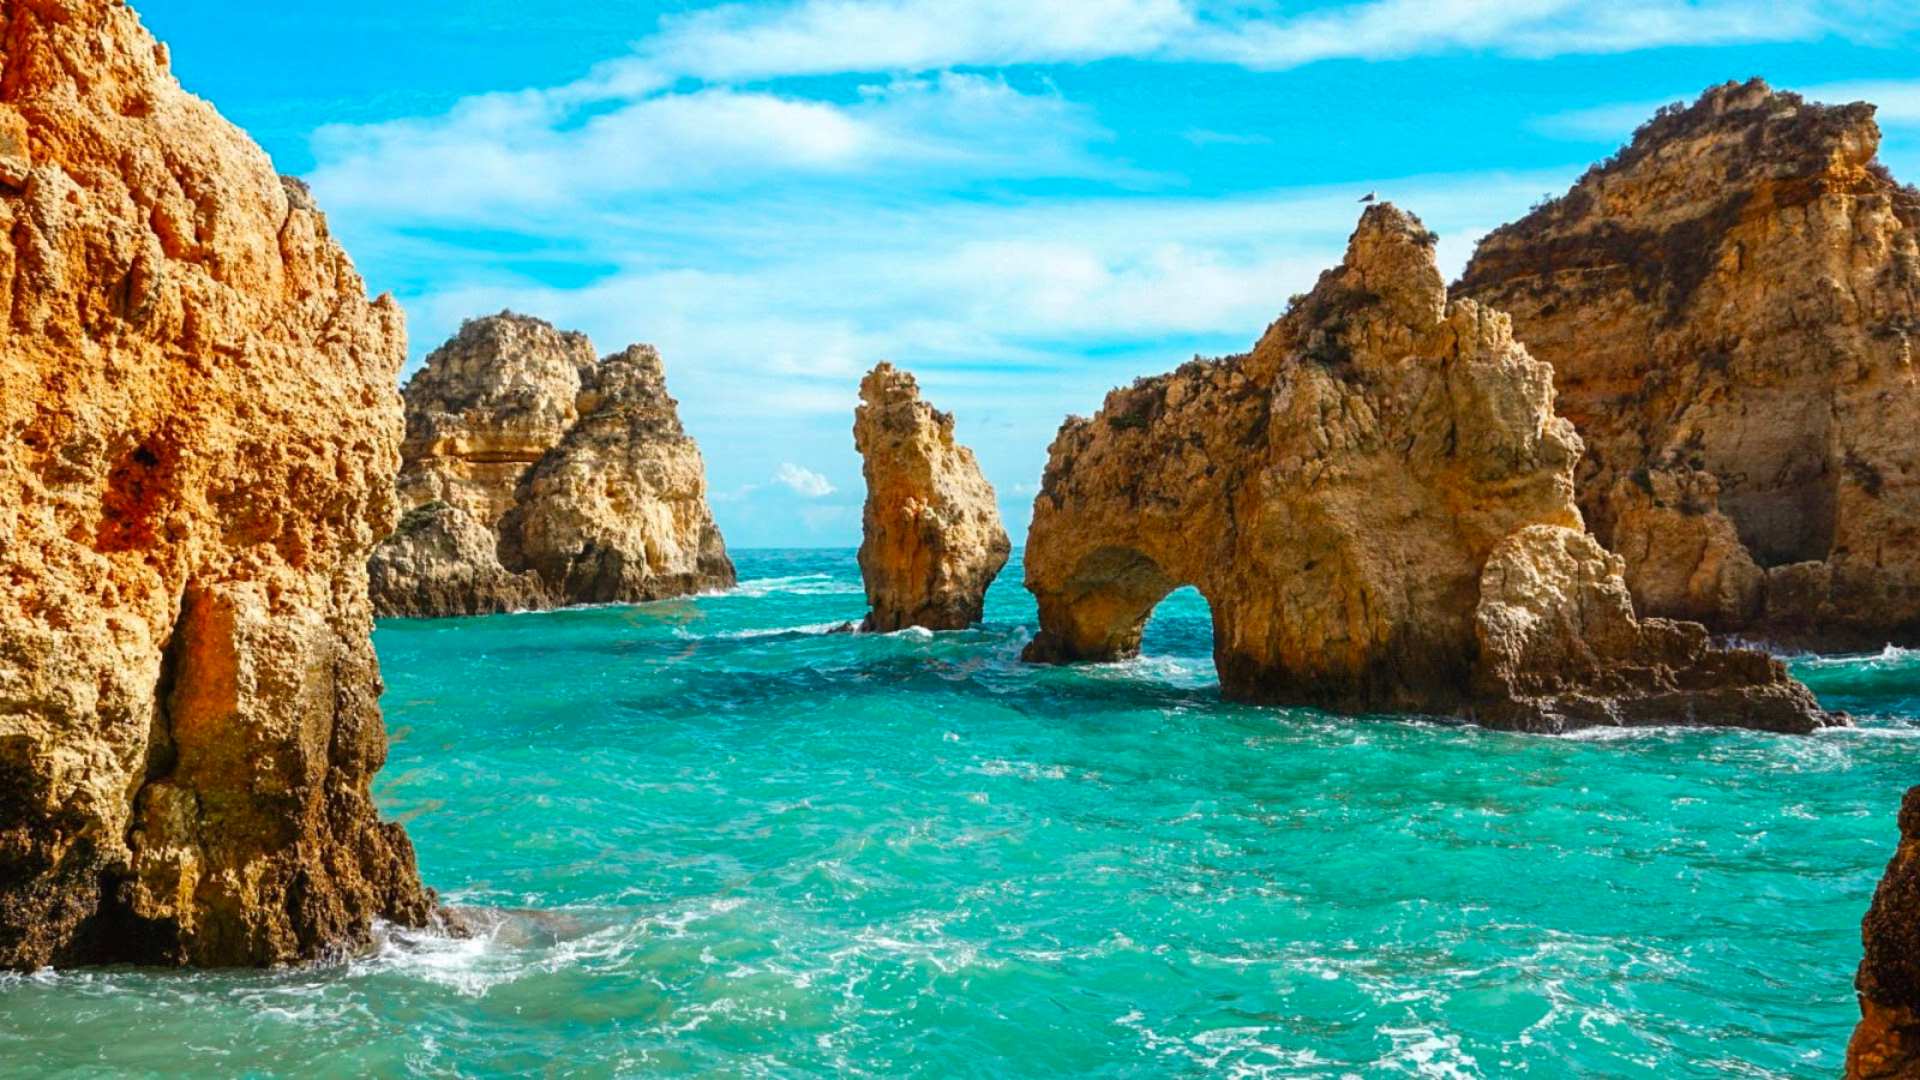 Vacanta in minunatul Algarve, Portugalia – 149 euro (zbor + cazare 6 nopti) – cunoscut pentru plaje exotice